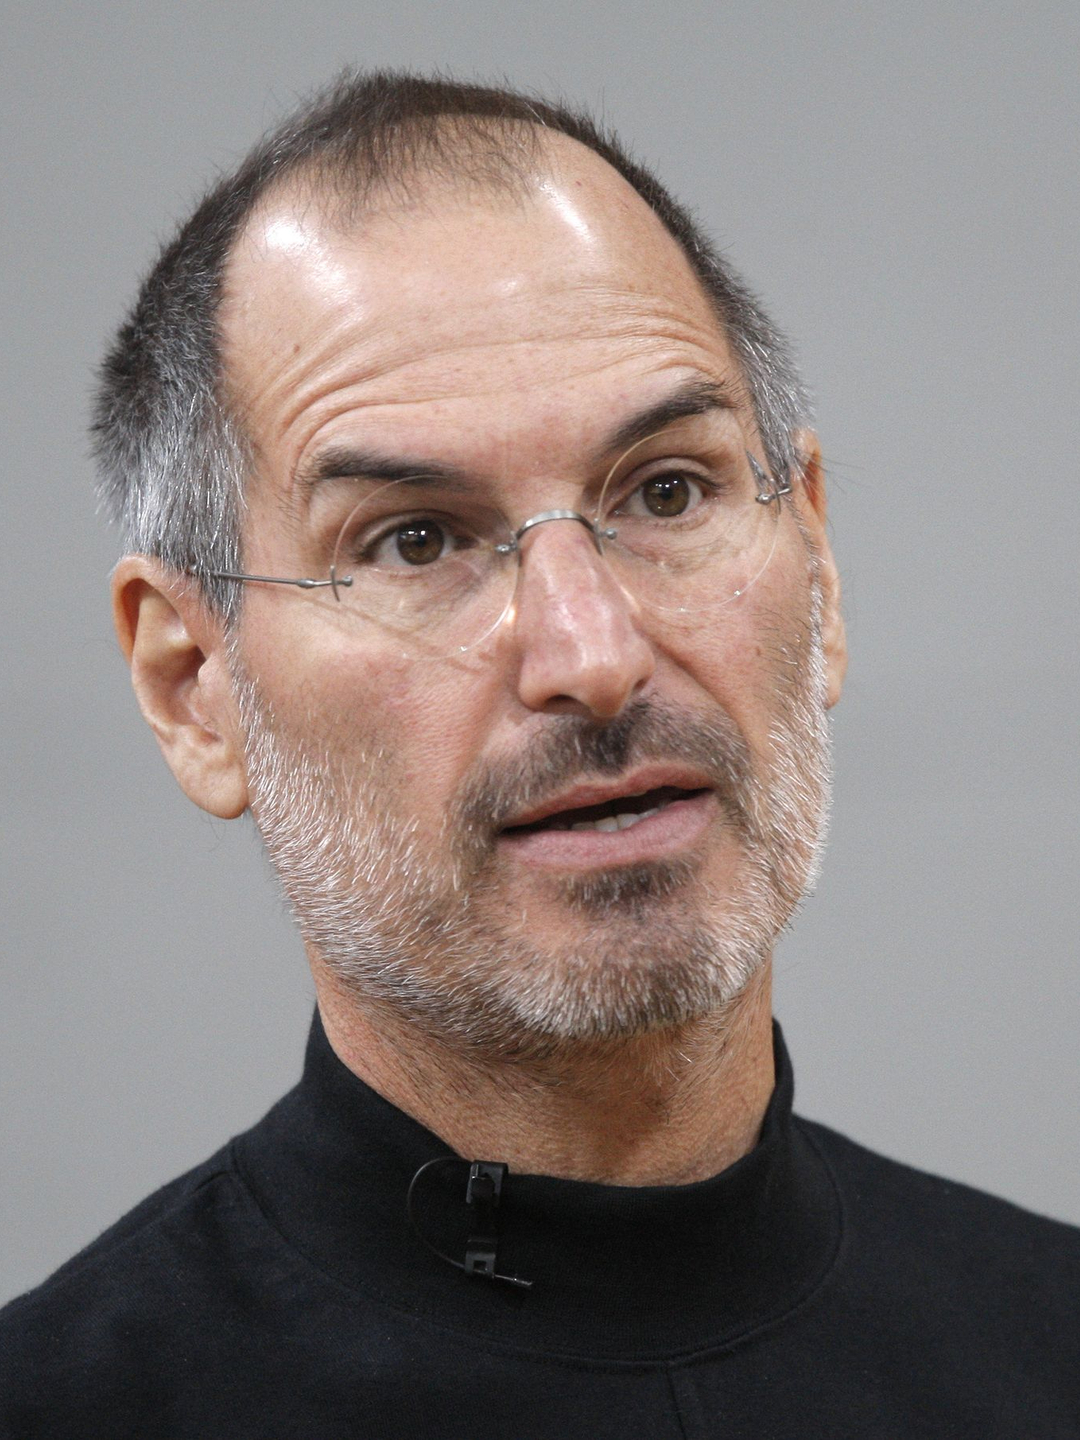 Steve Jobs background